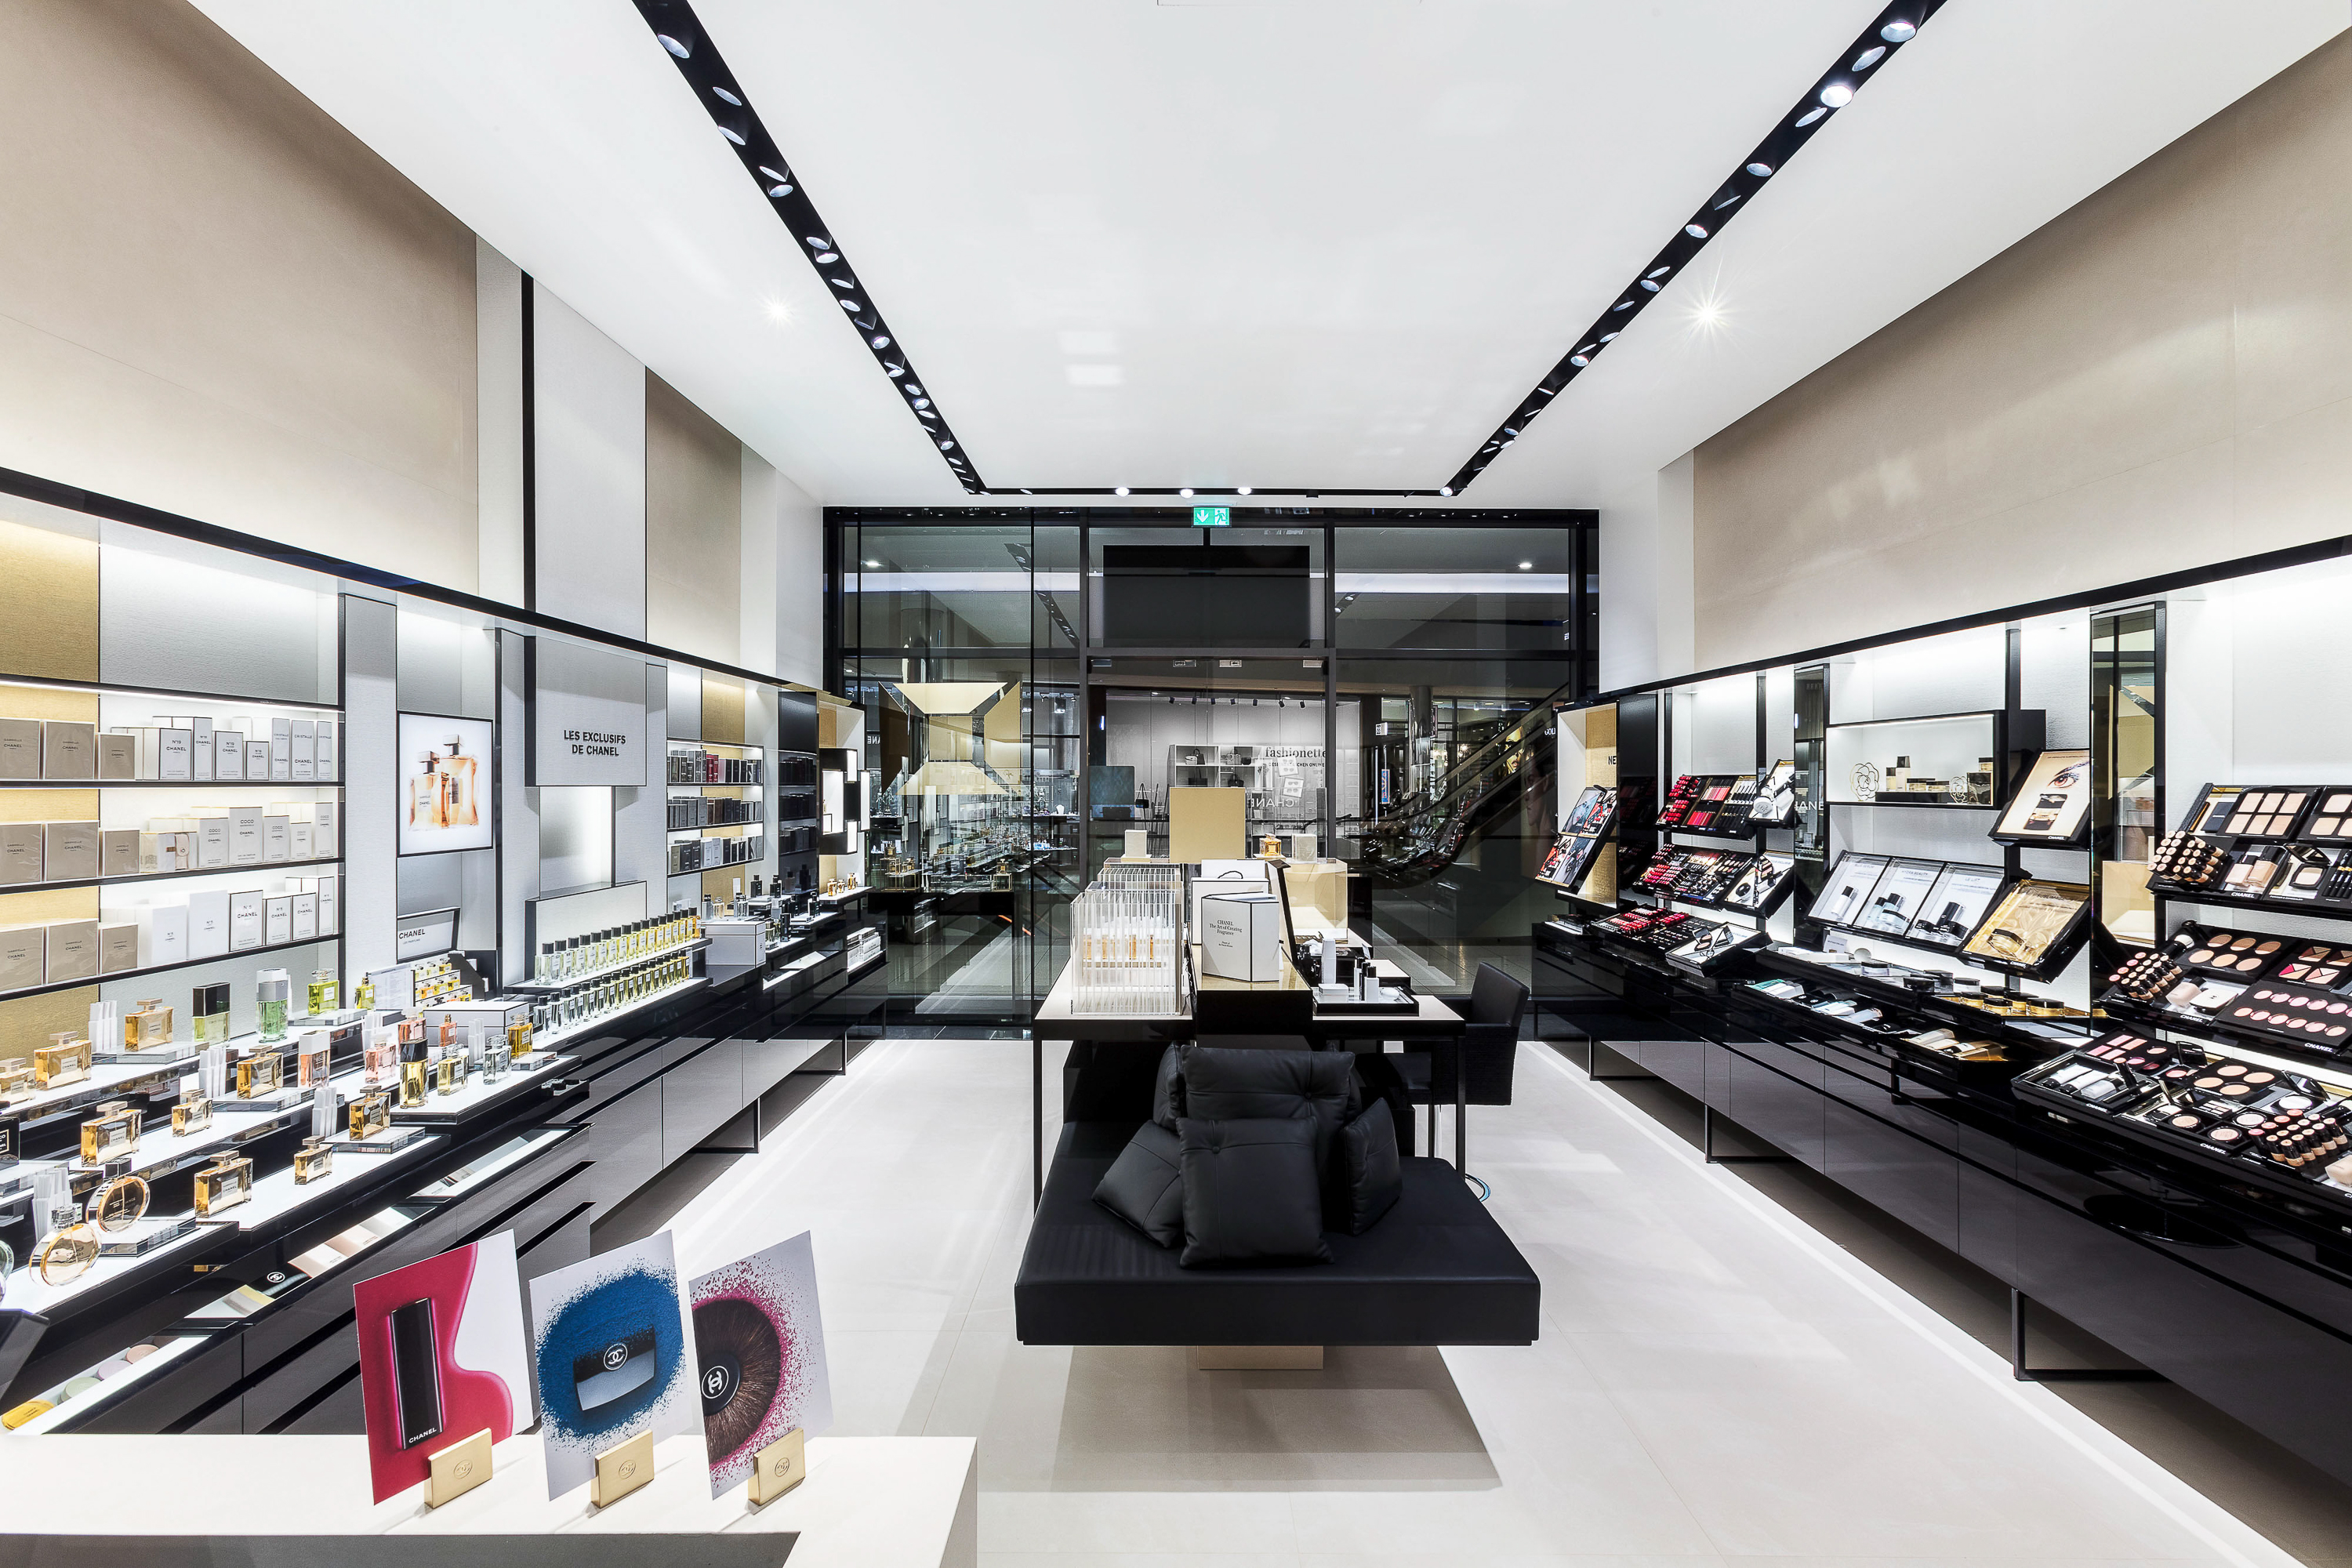 Architekturfotograf für Retail Marketing - Chanel Boutique KÖ/ Düsseldorf